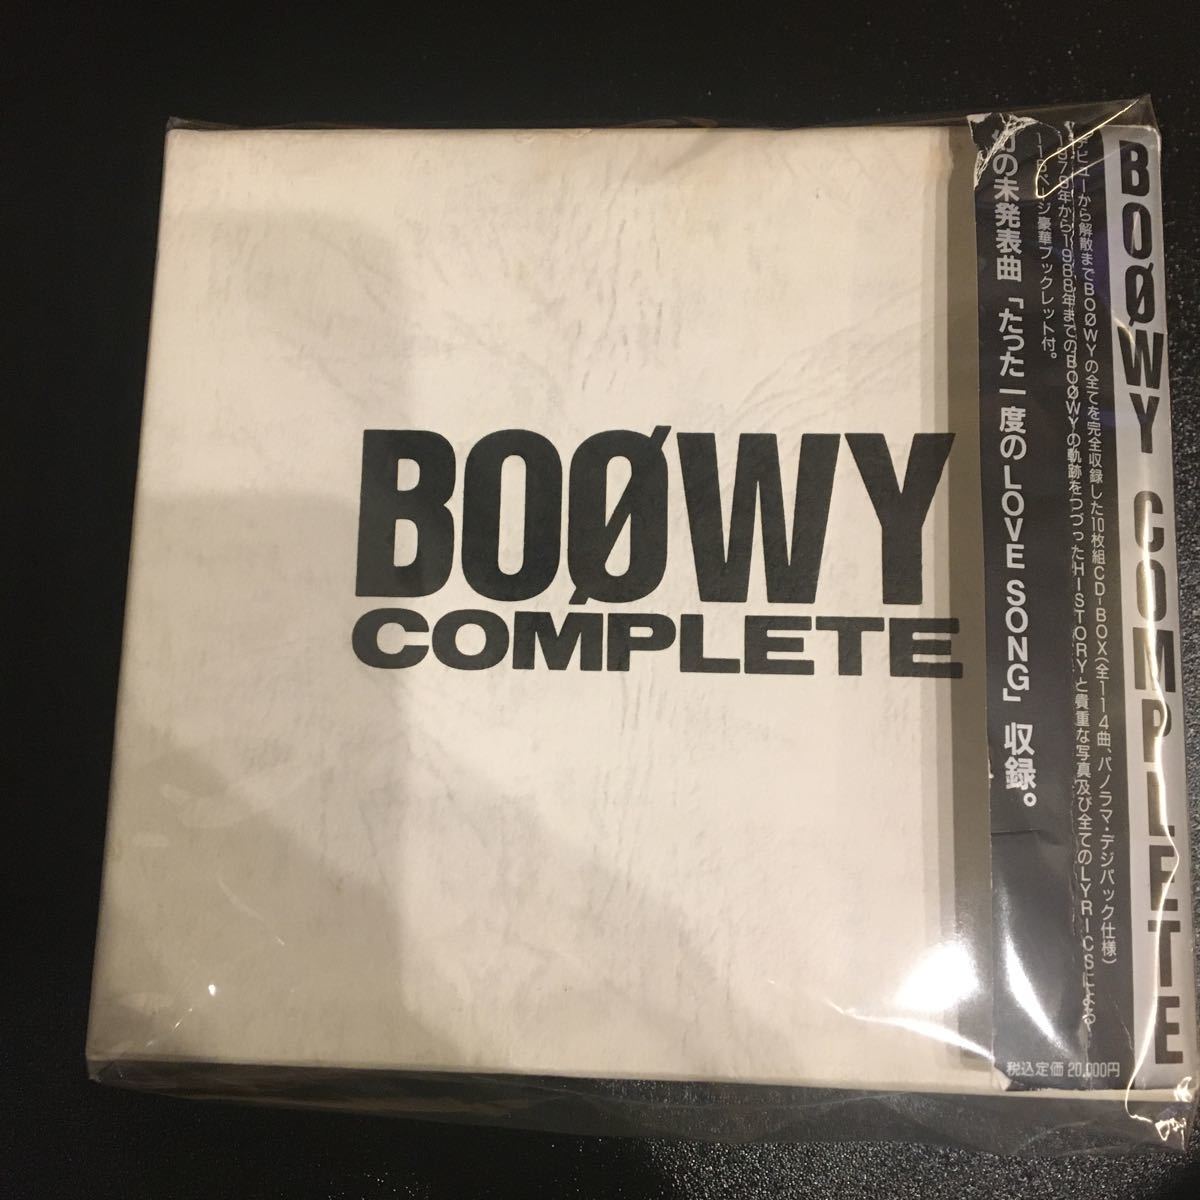 Yahoo!オークション - BOOWY COMPLETE BOΦWY コンプリート 帯